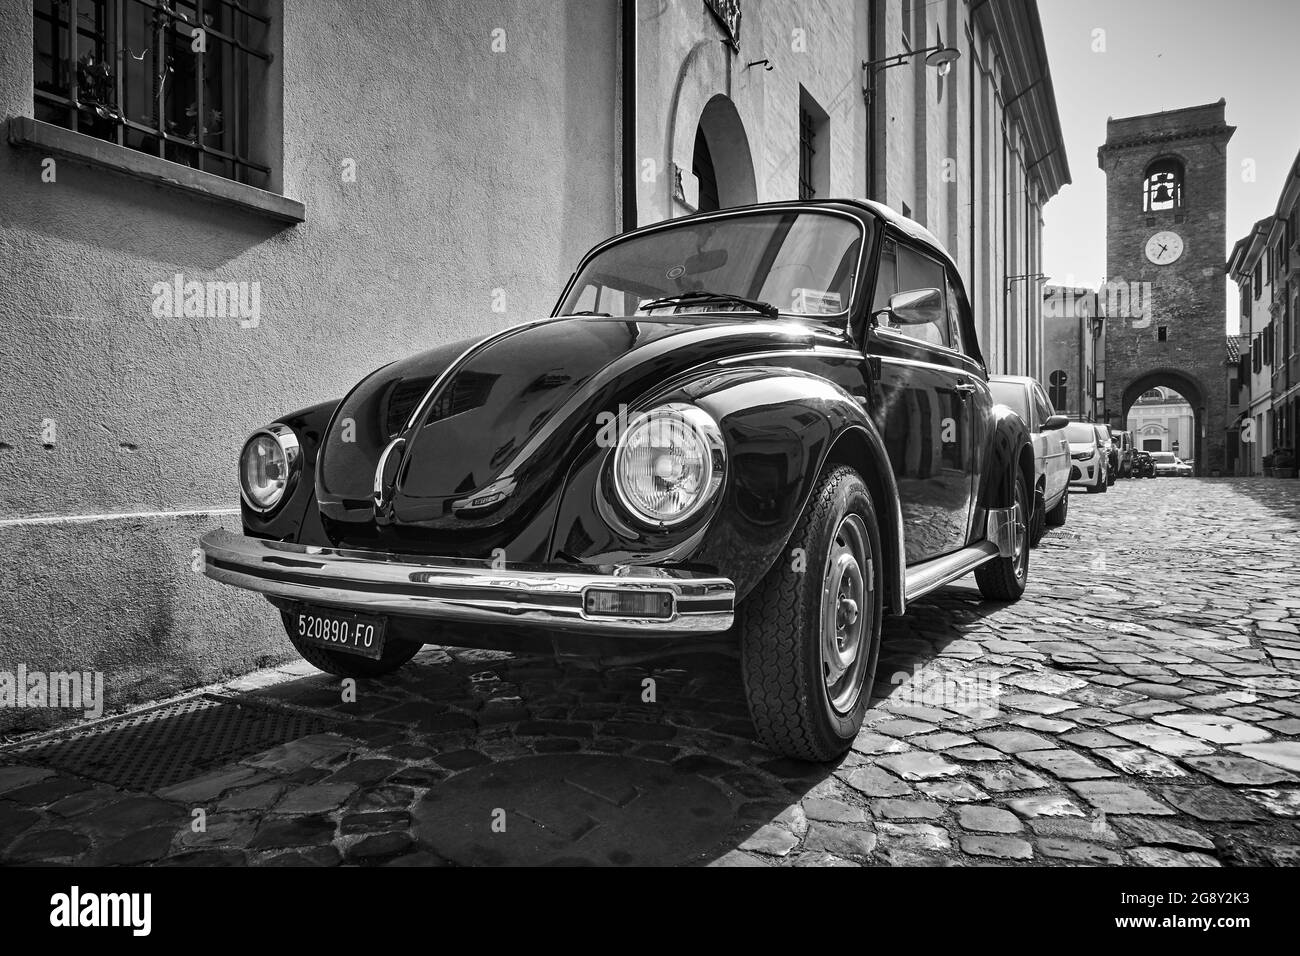 San Giovanni in Marignano, Italie - 29 février 2020: Voiture d'époque Volkswagen Beetle 1303 Cabriolet (1972—1980) garée dans la rue dans l'ancien italien à Banque D'Images